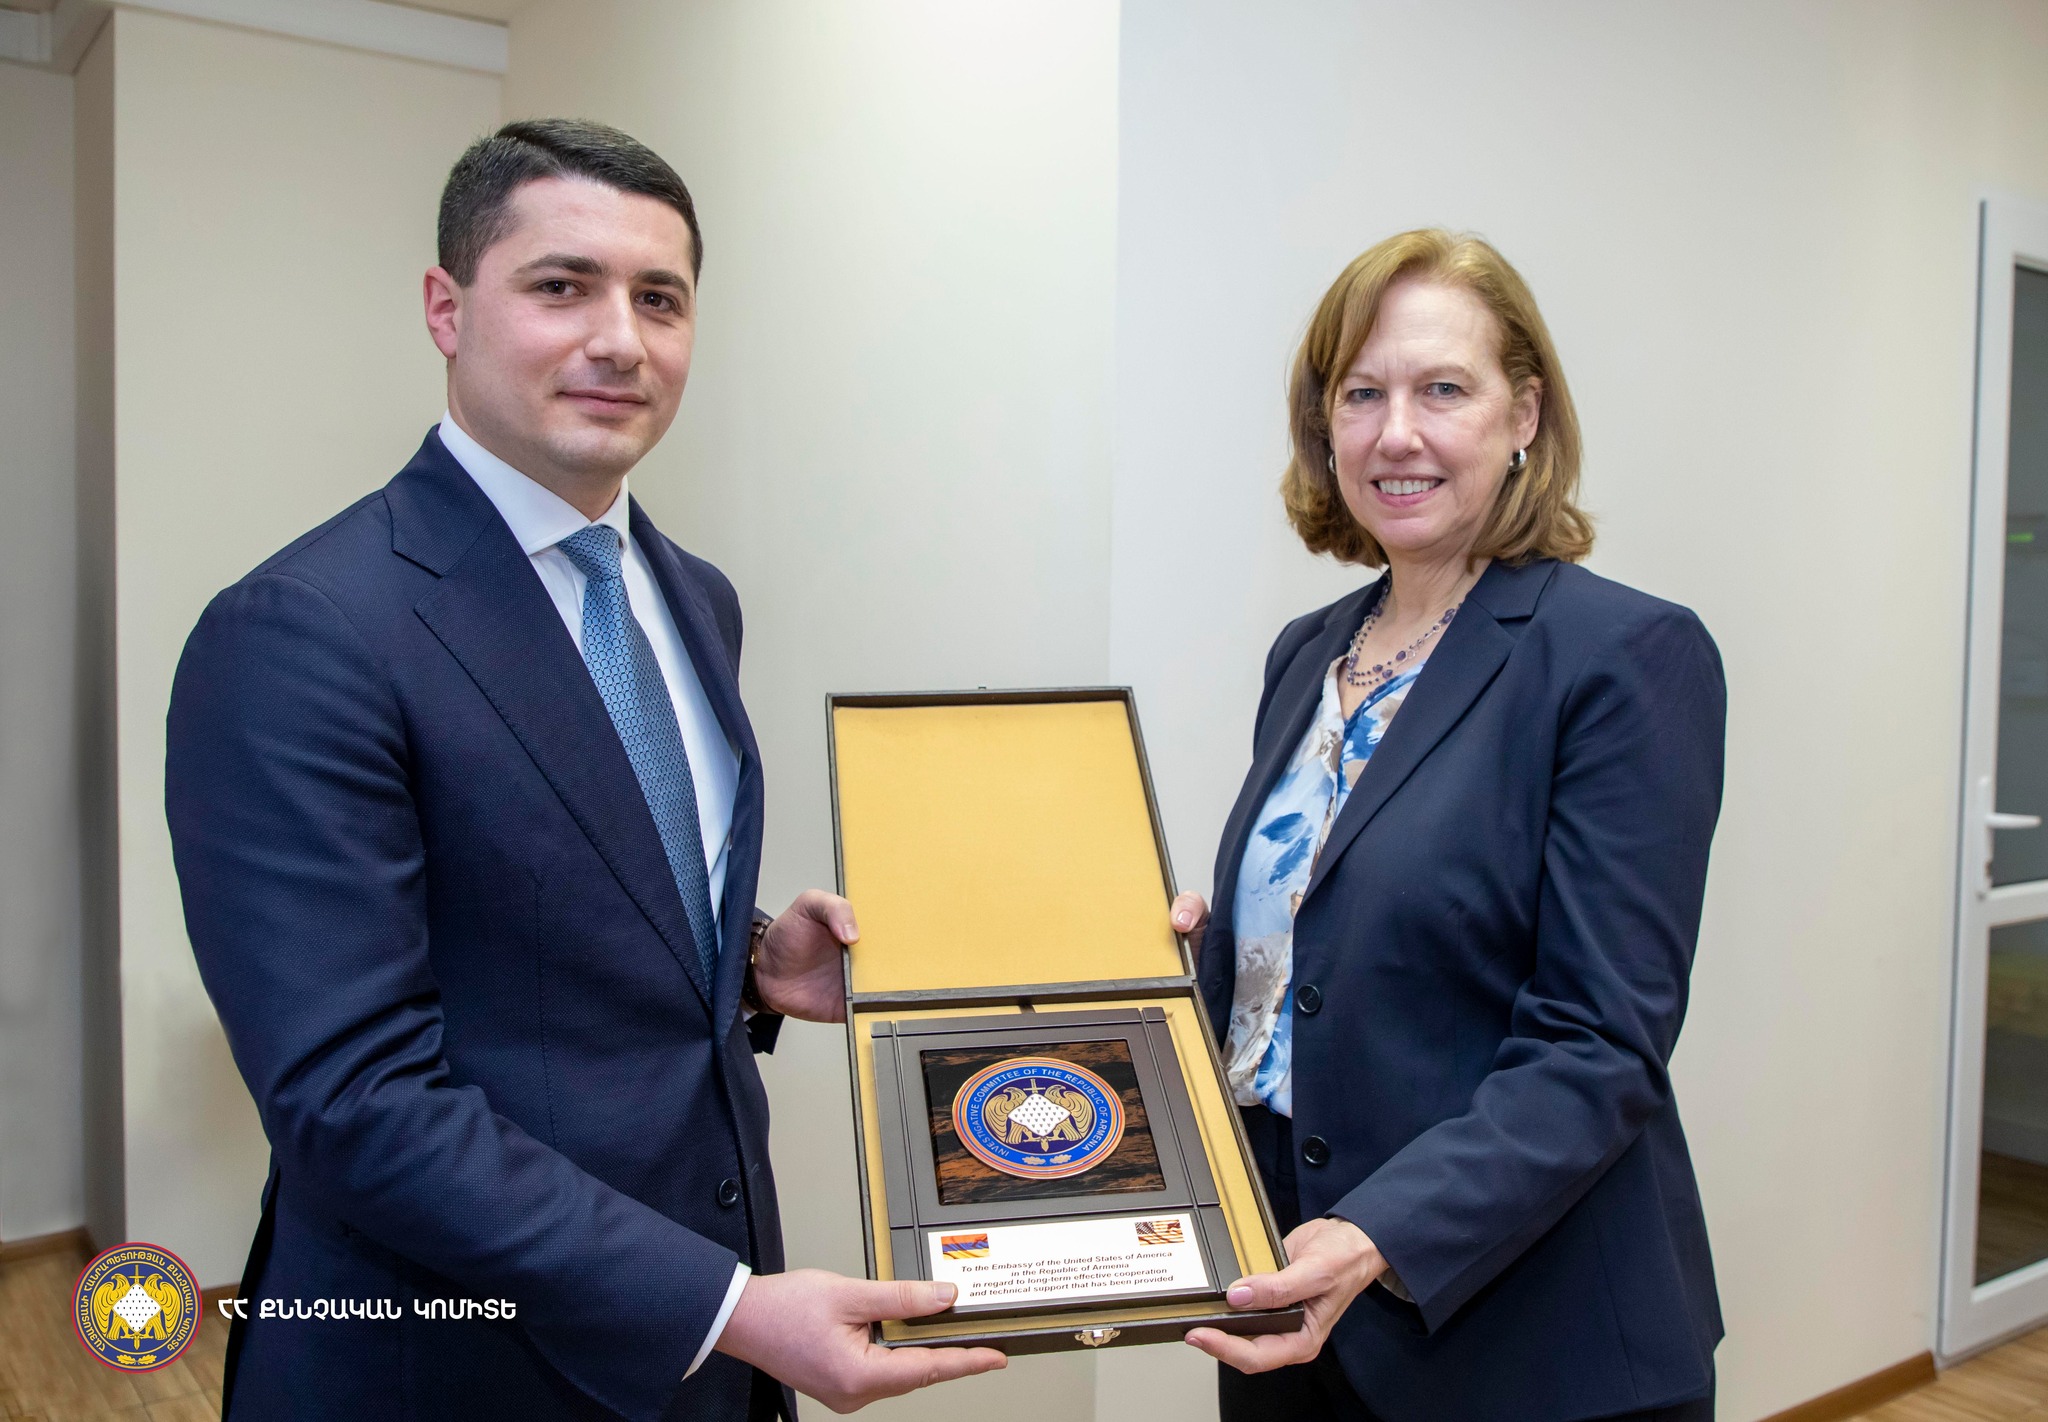 ԱՄՆ-ն պատրաստ է աջակցել Հայաստանին իրավապահ ոլորտի բարեփոխումներում․ դեսպան Քվինը՝ Քյարամյանին